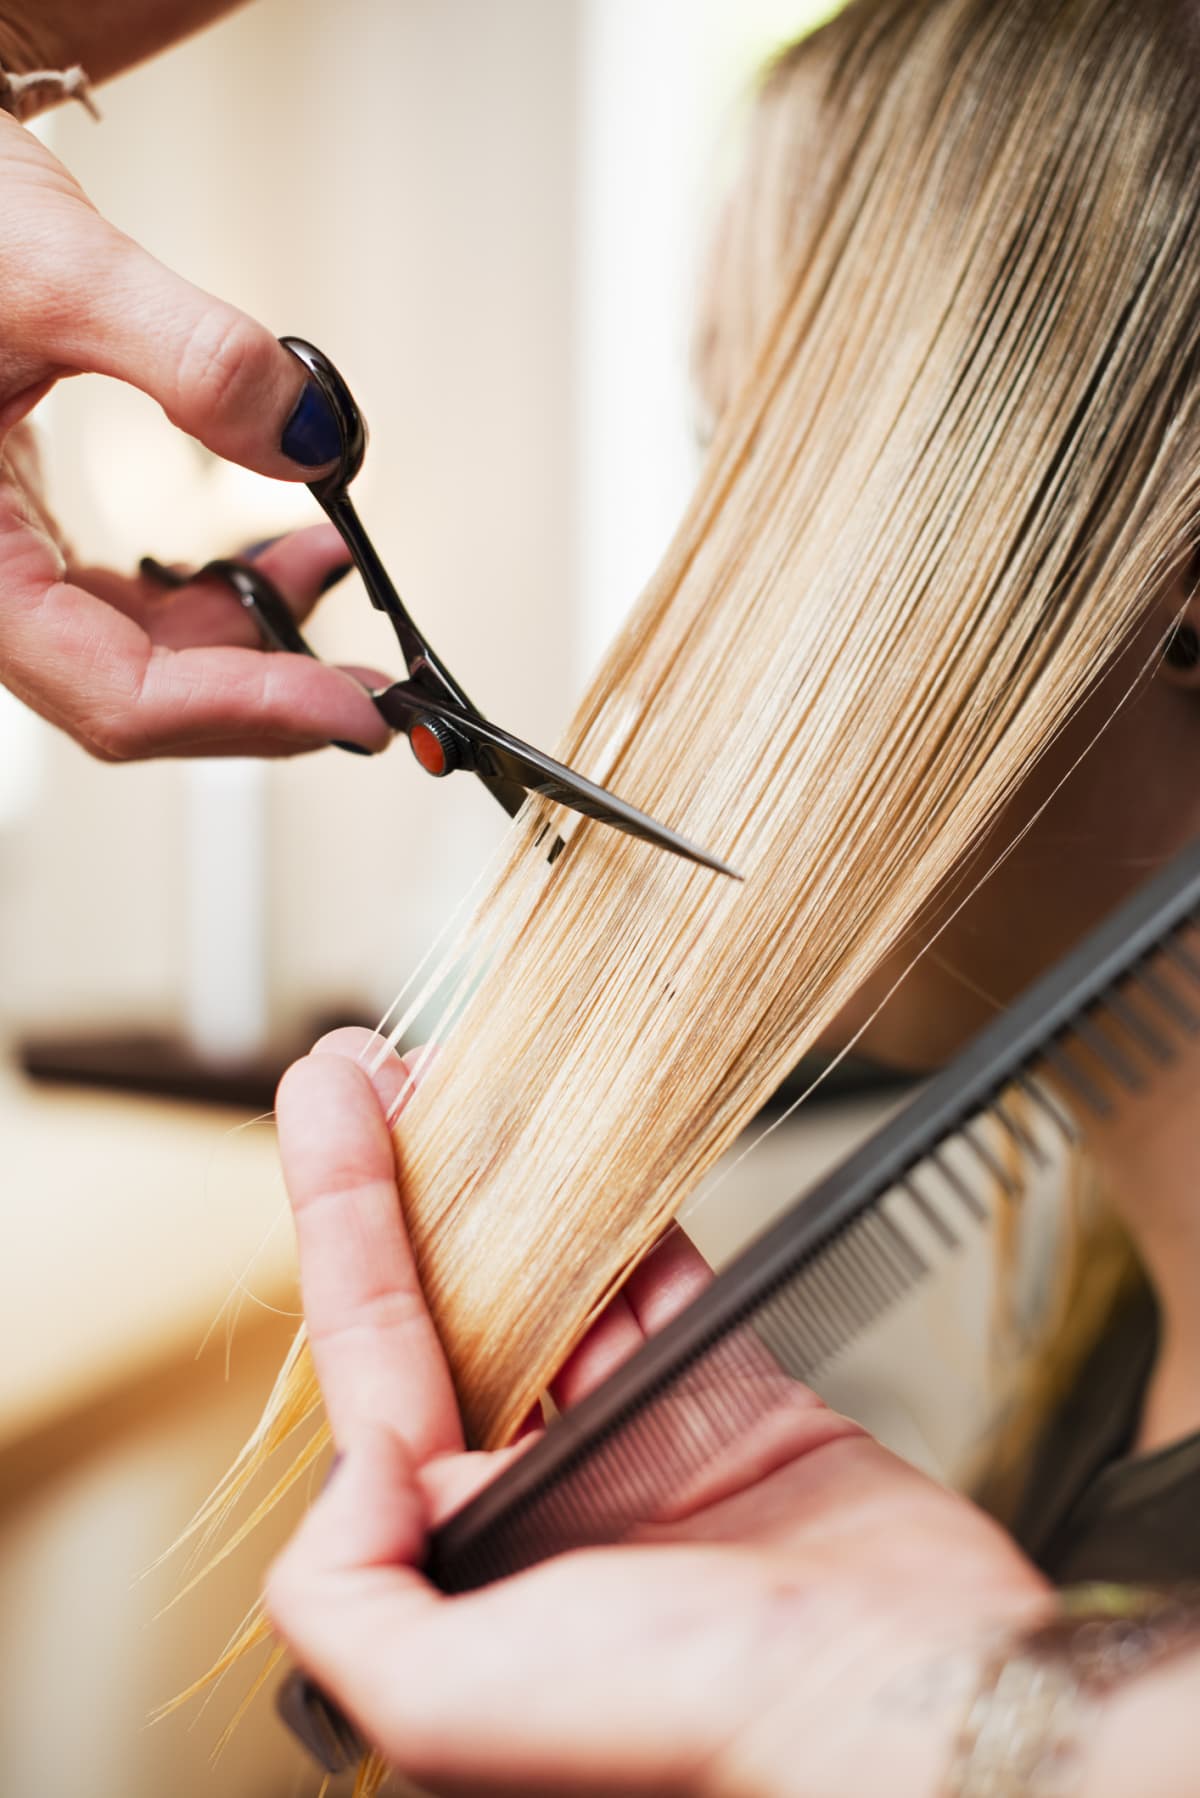 A woman with long hair at a hair salon getting a haircut